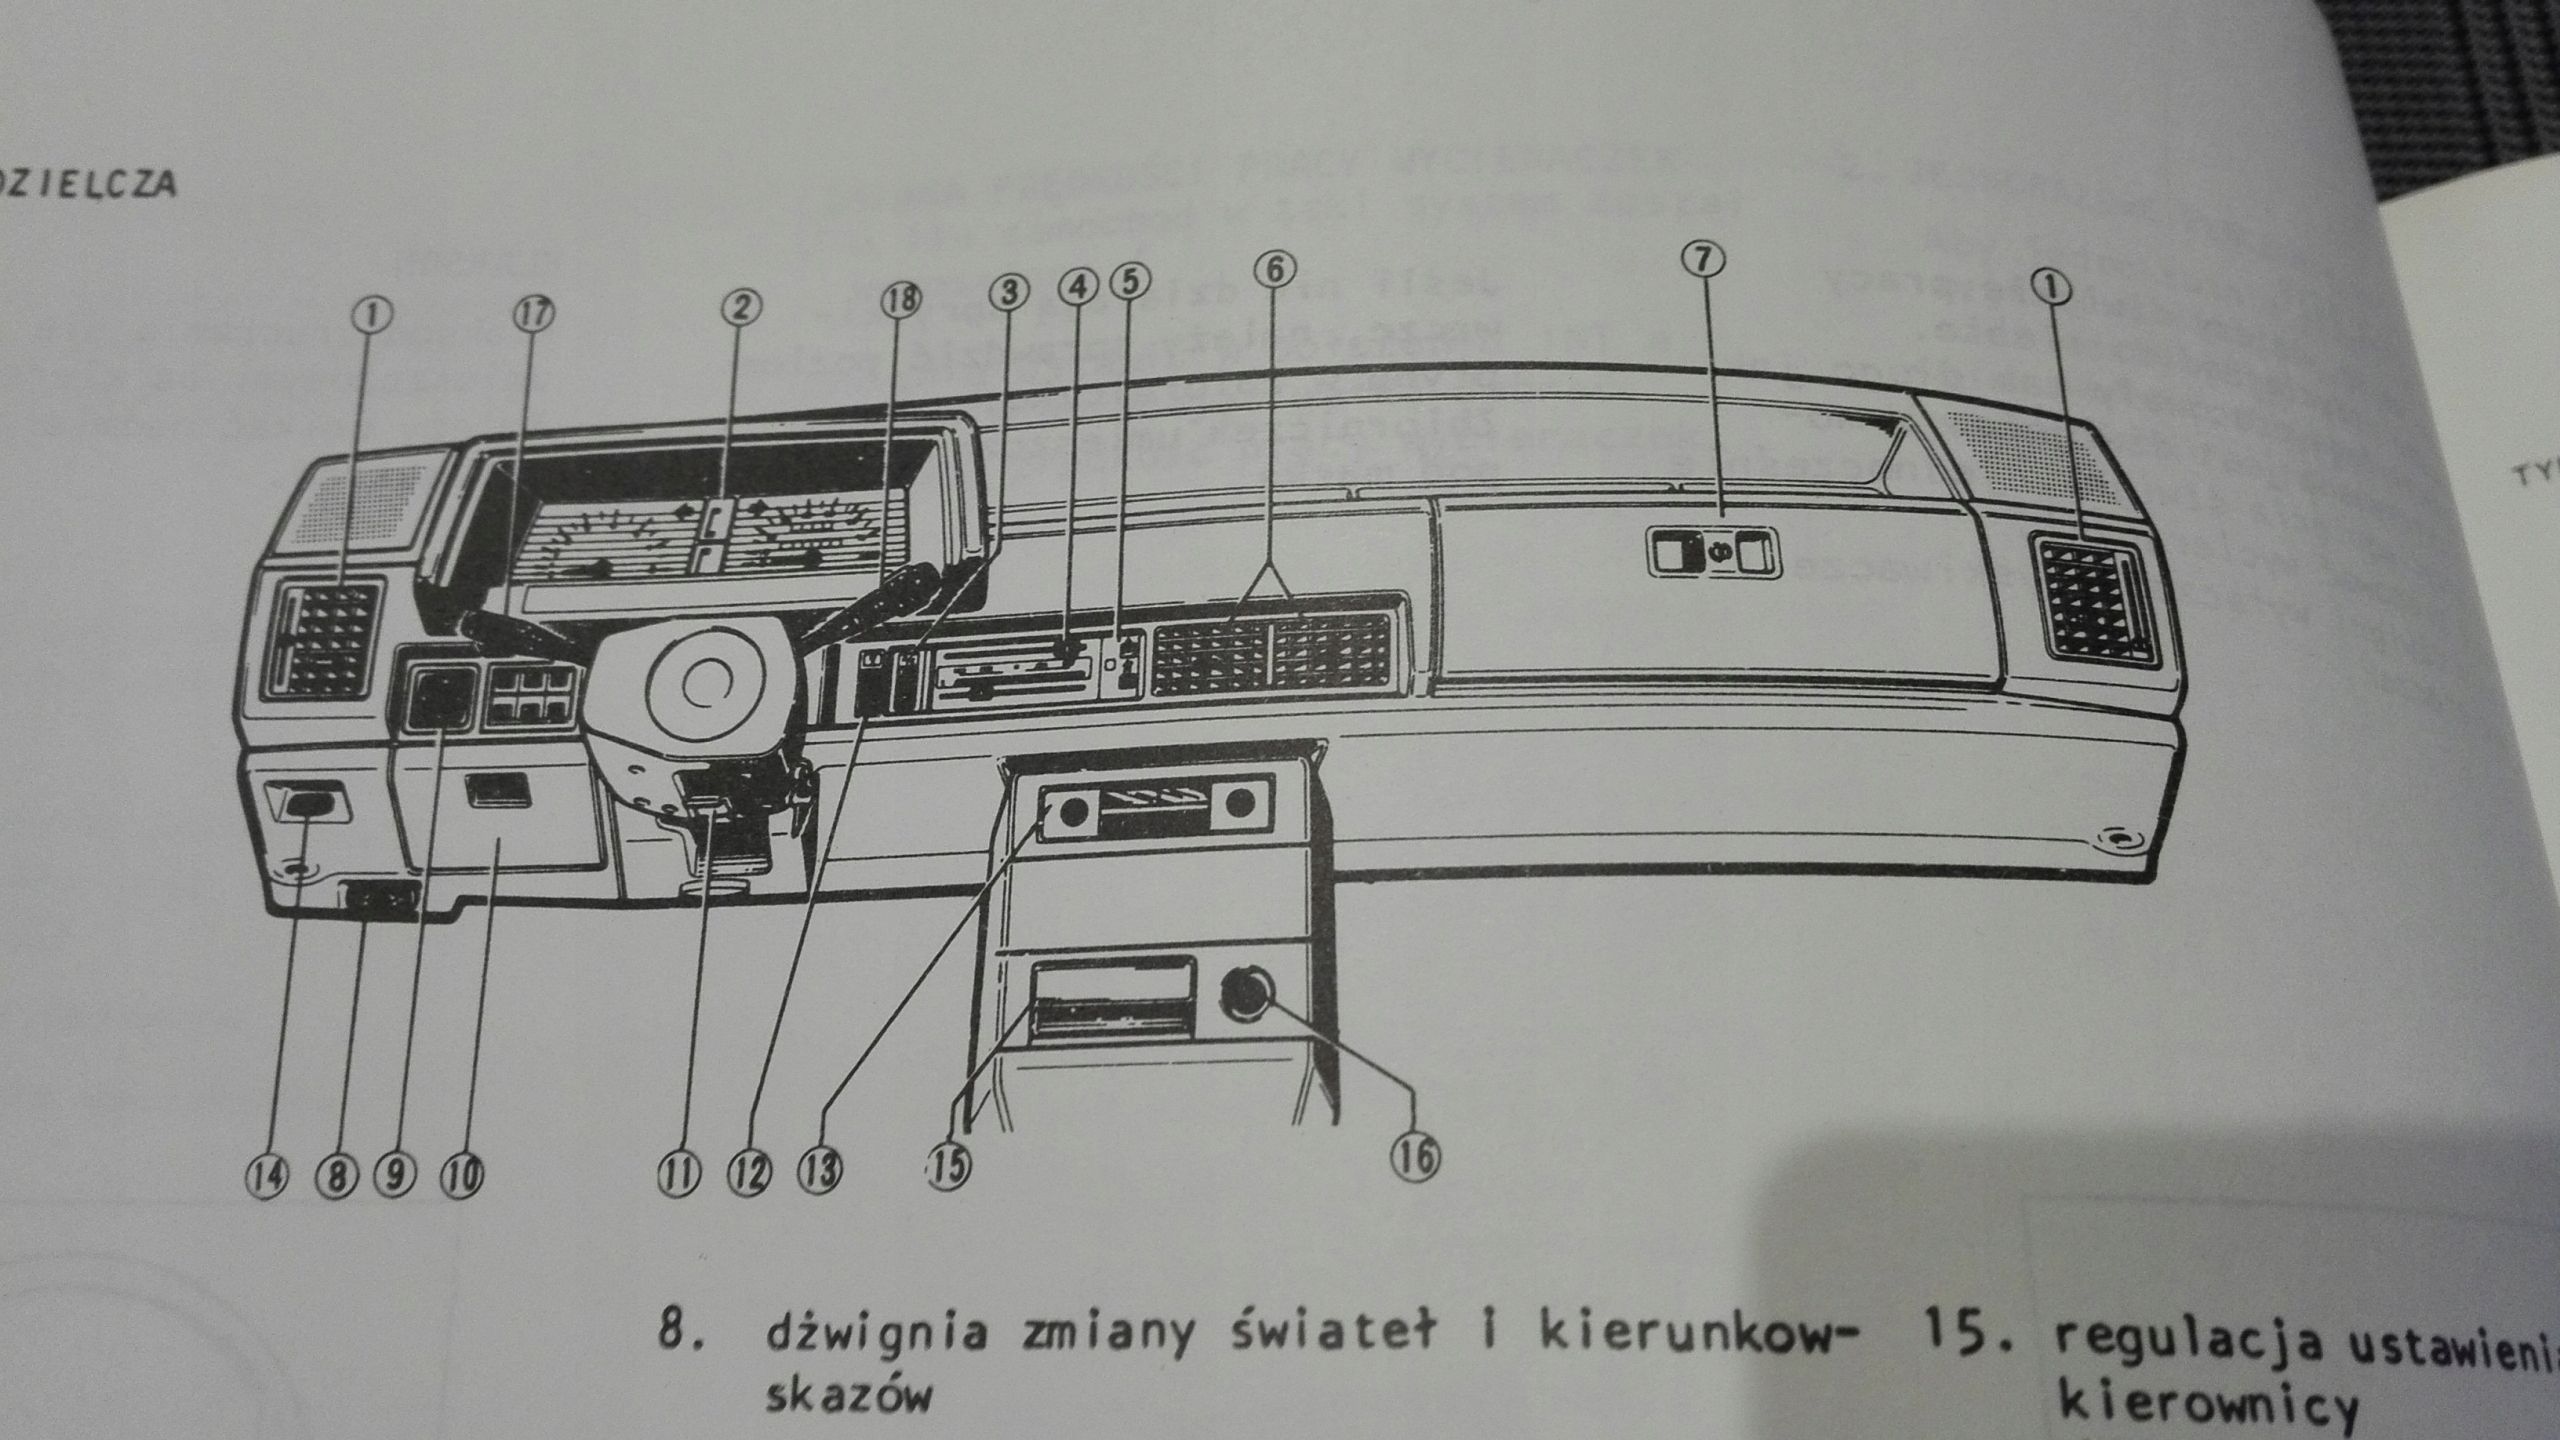 Mazda 626 Instrukcja Obslugi Ksiazka 1983 Polska